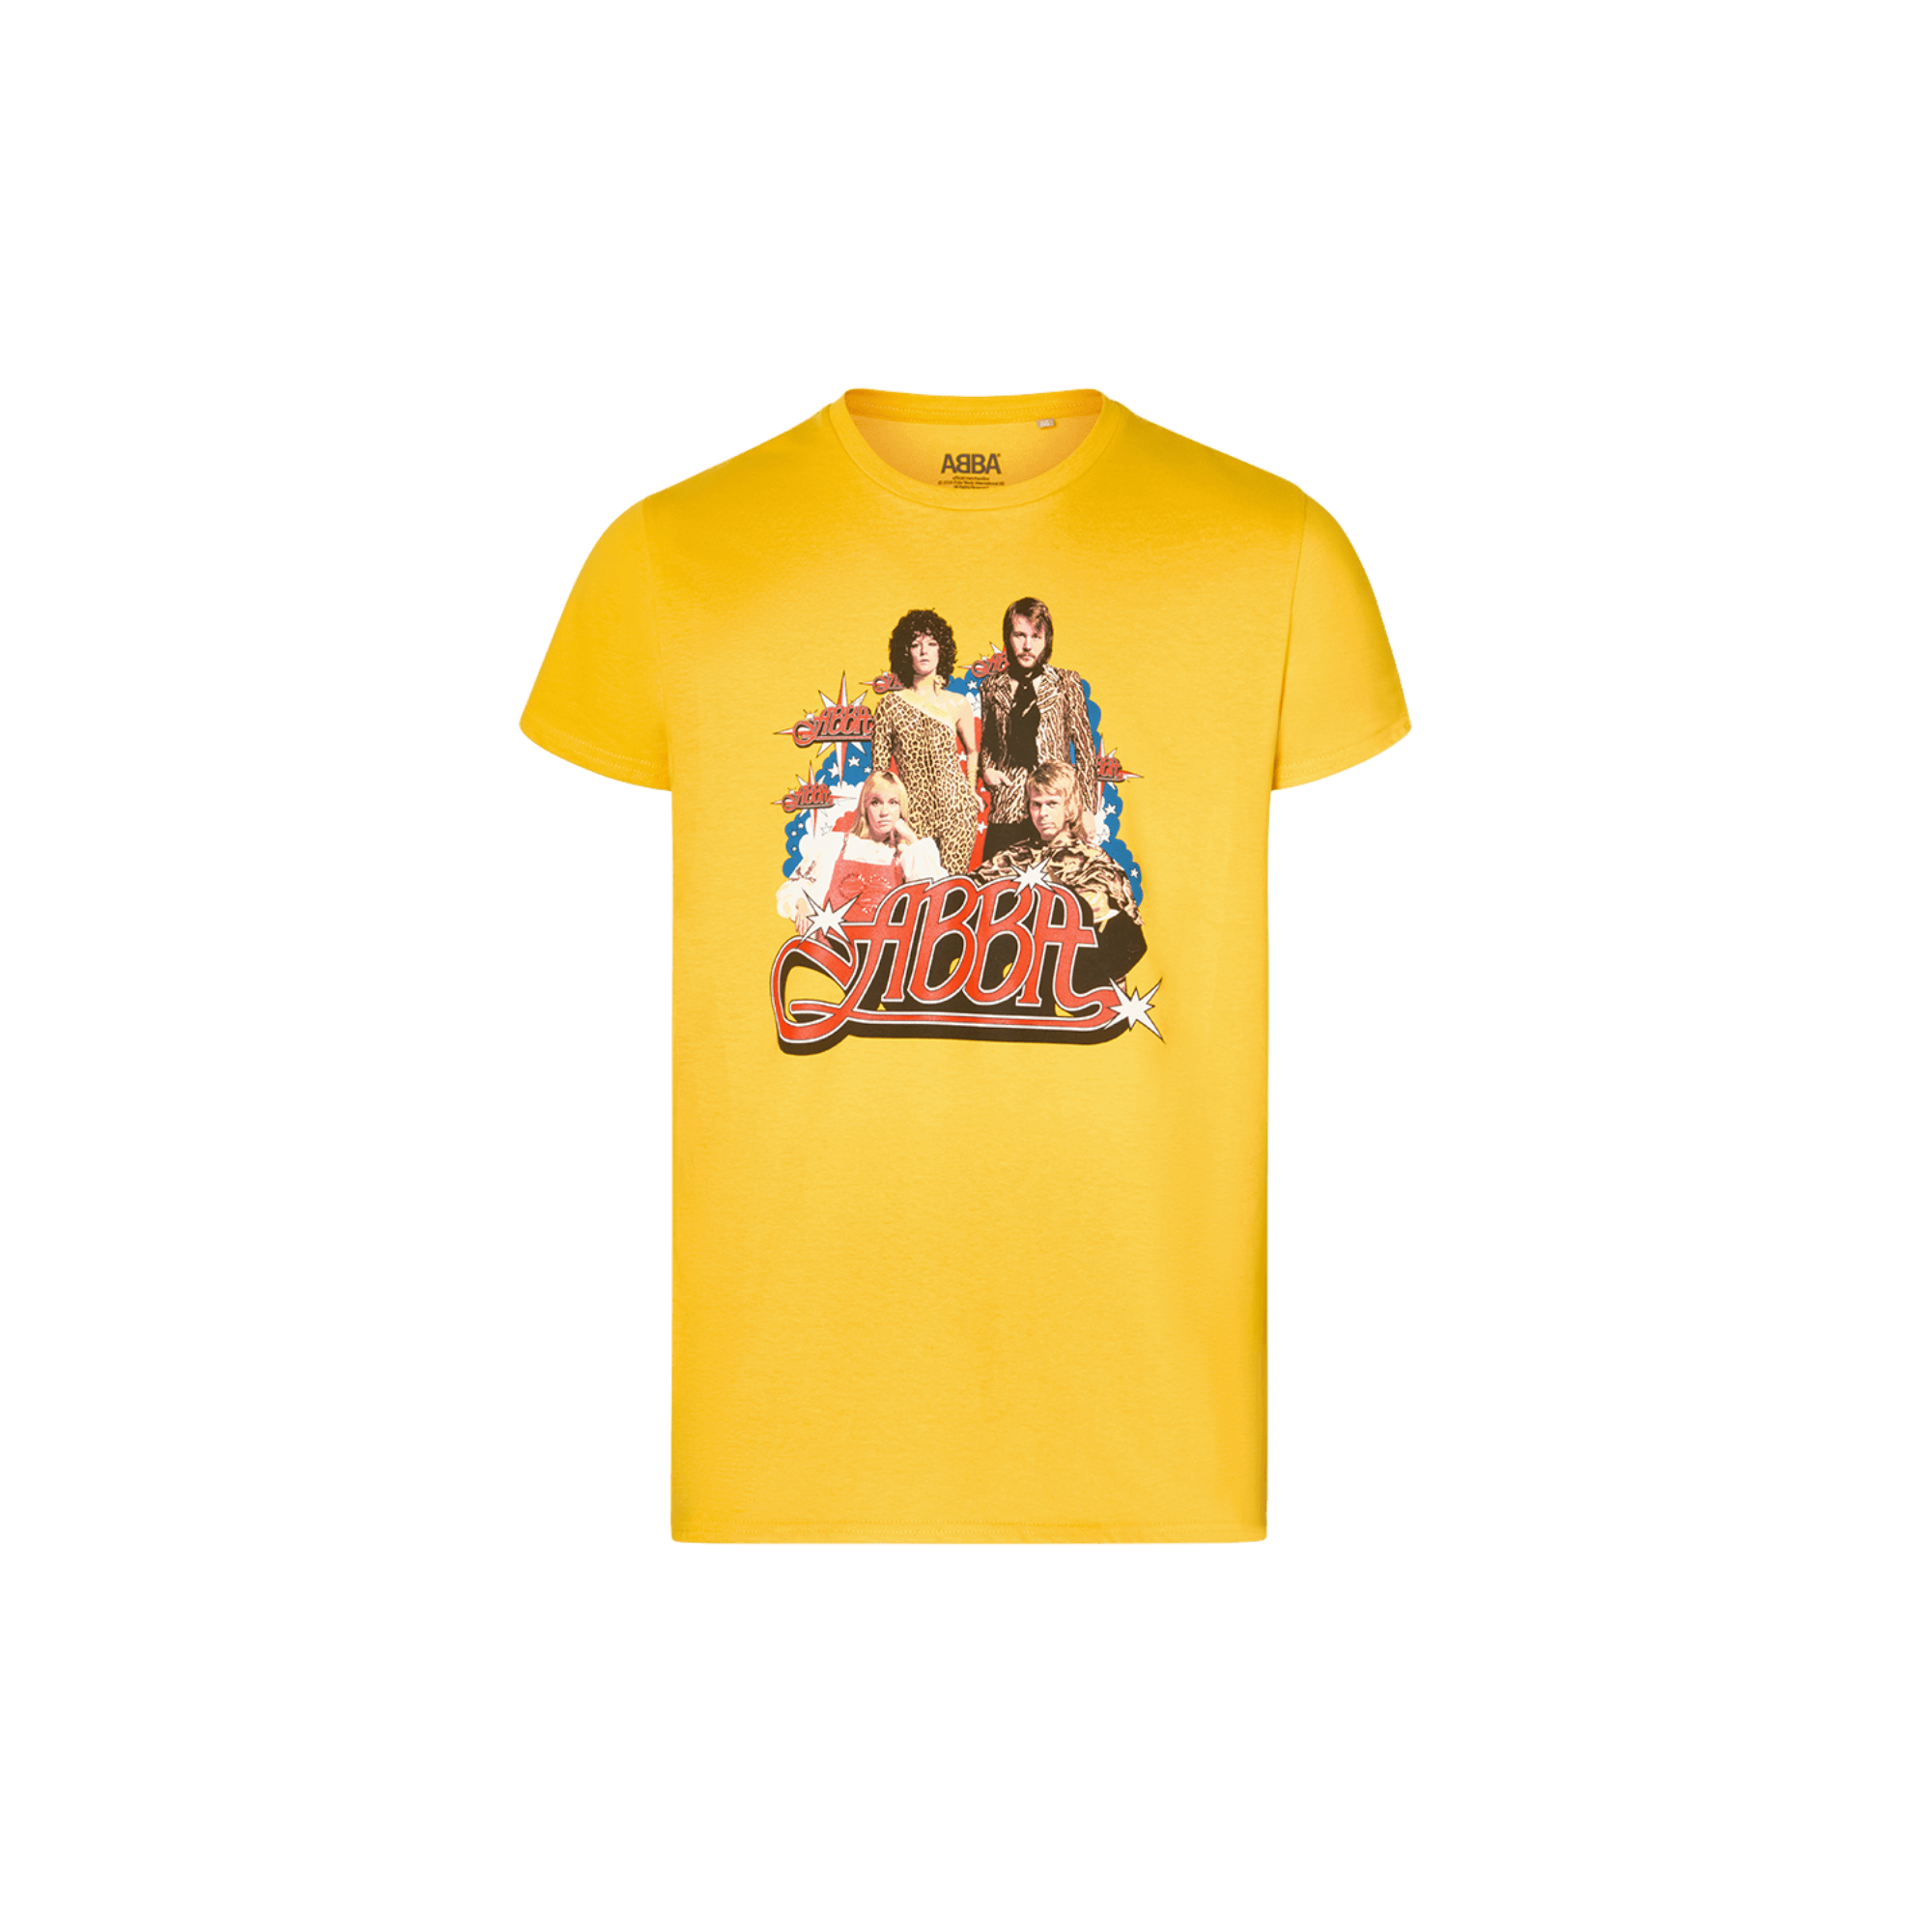 ABBA Teen Memories t-shirt